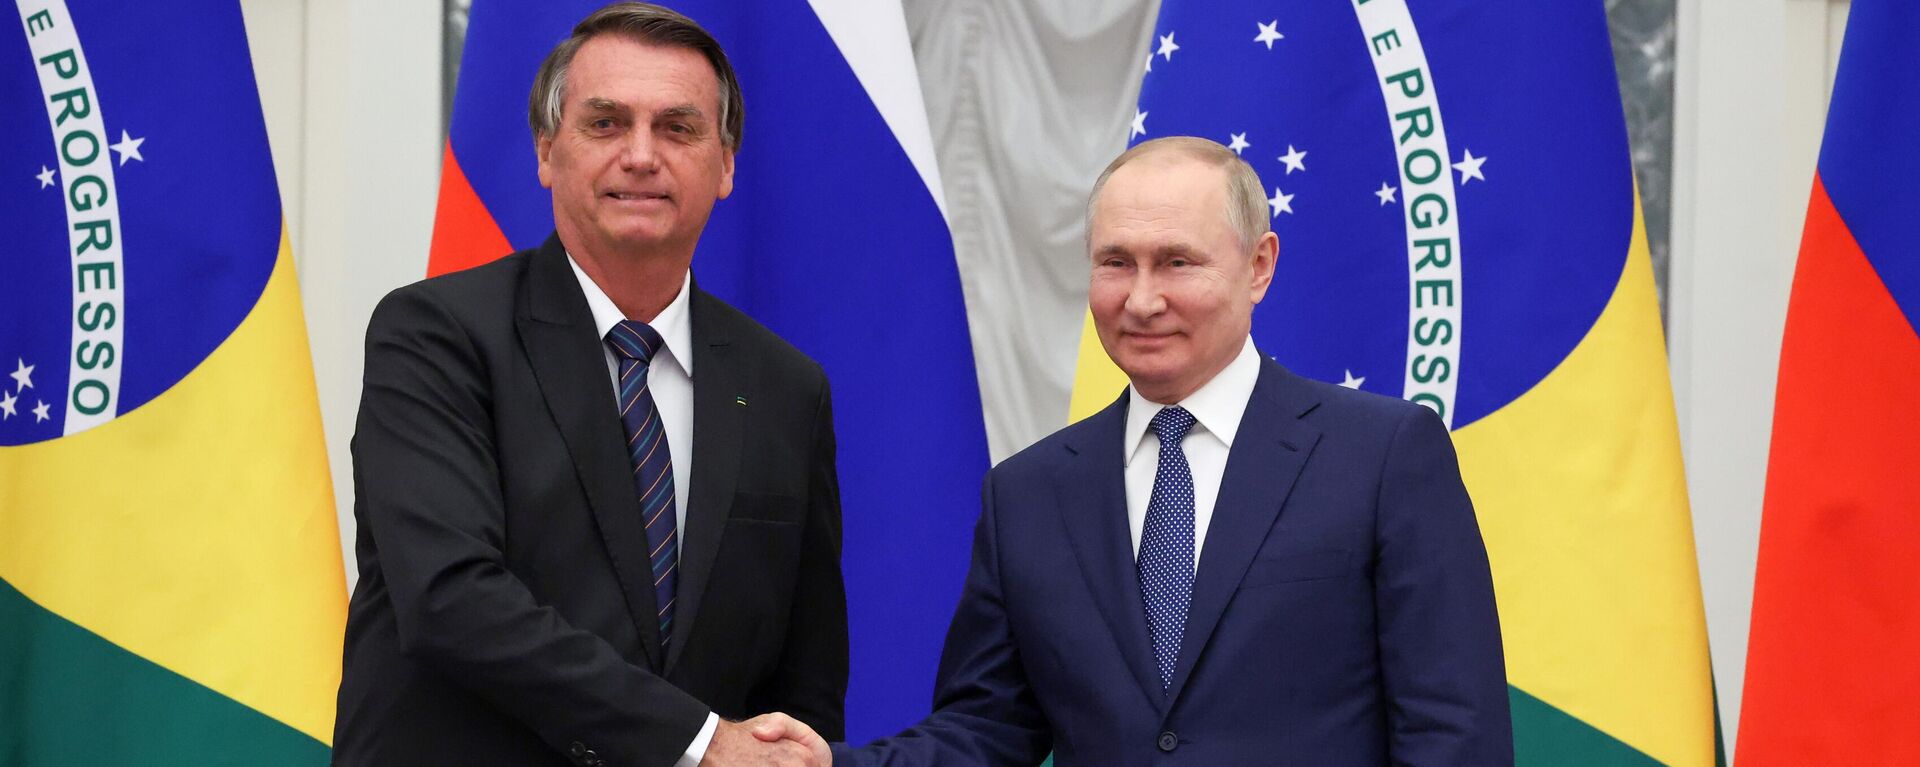 Jair Bolsonaro e Vladimir Putin, presidentes do Brasil e da Rússia, respectivamente, após encontro oficial no Kremlin, Moscou, Rússia, 16 de fevereiro de 2022 - Sputnik Brasil, 1920, 12.07.2022